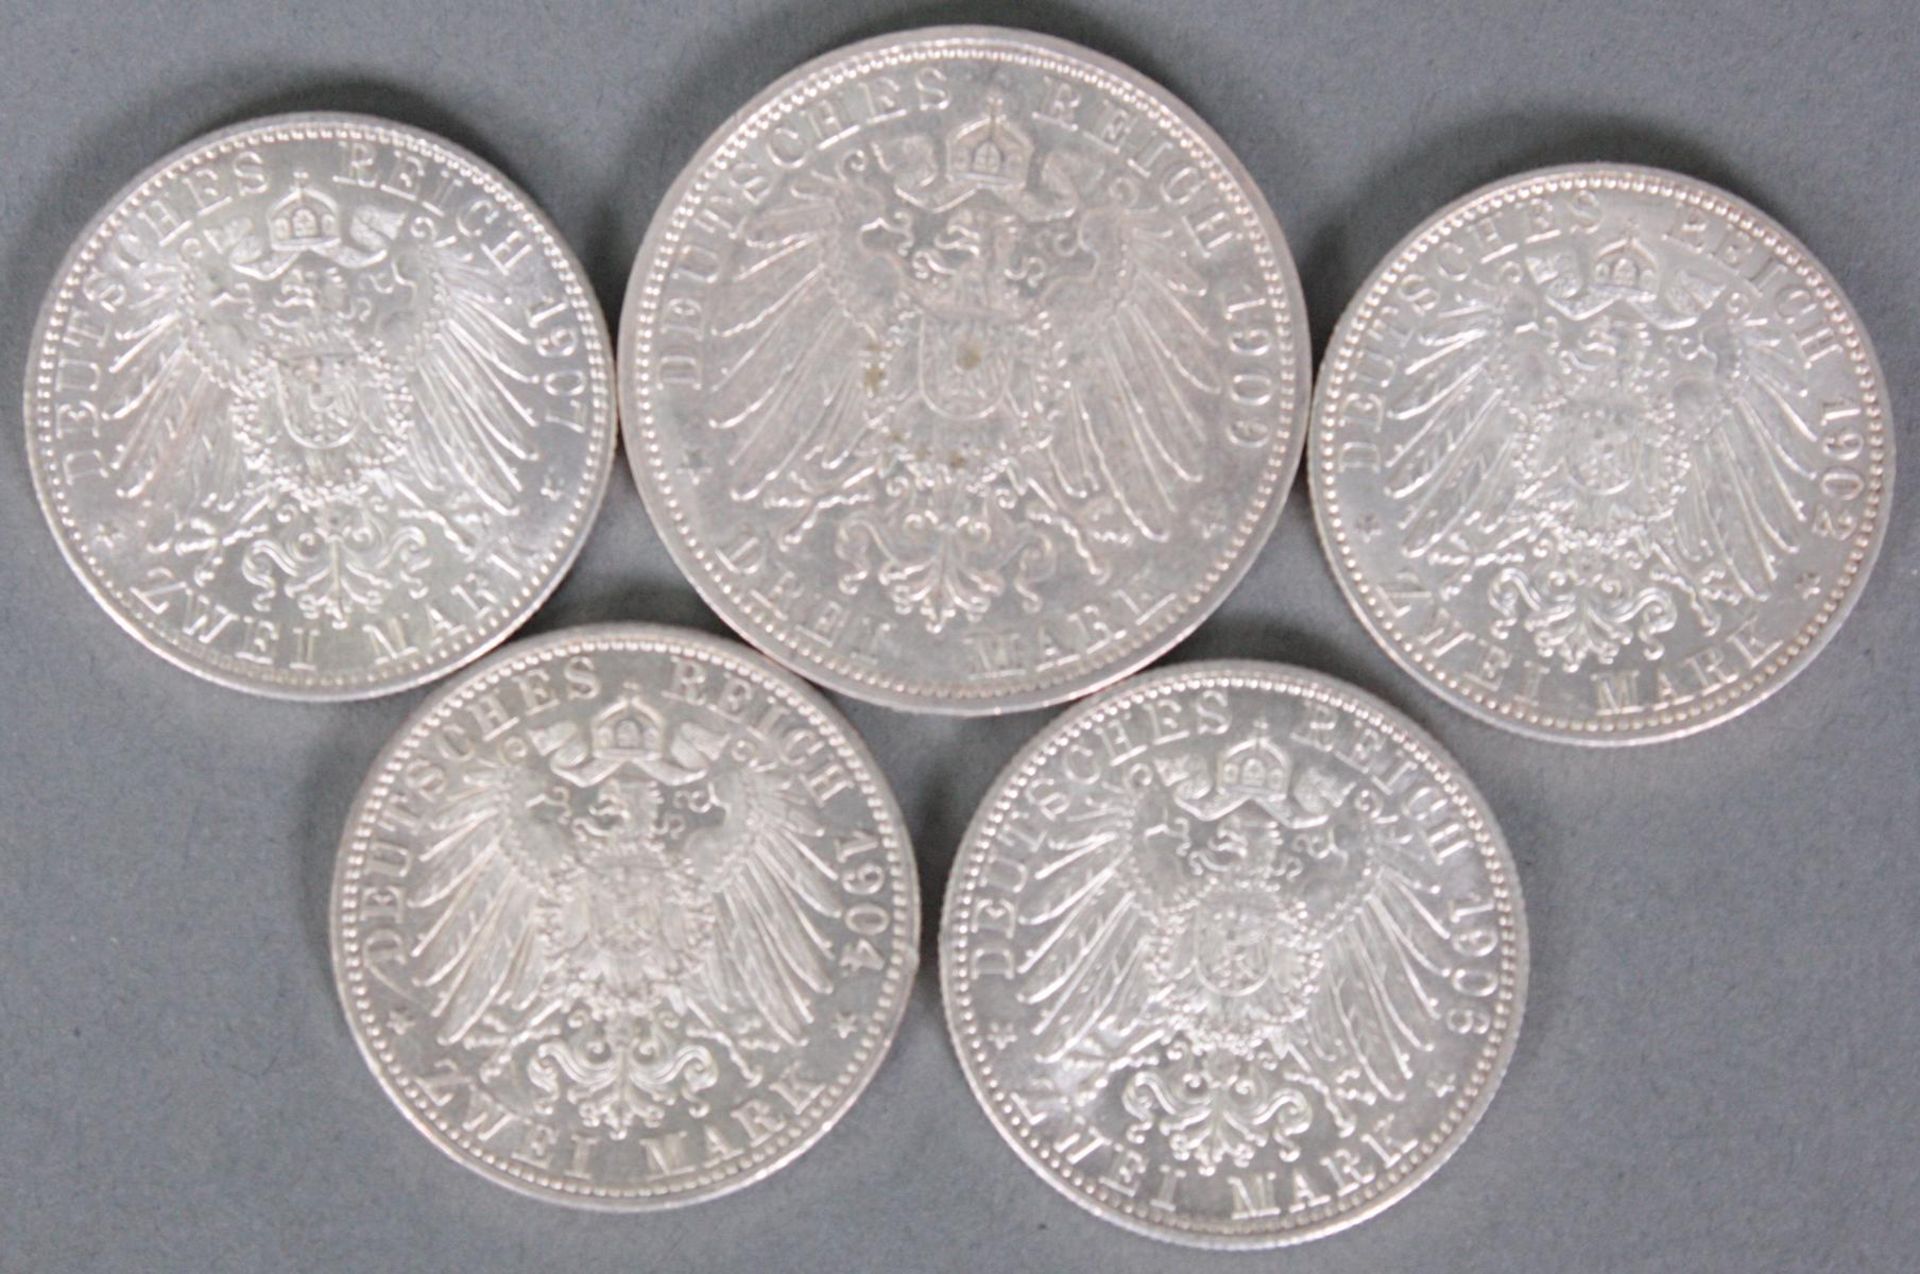 Baden, 5 Münzen, 3 Mark und 2 Mark - Image 2 of 2